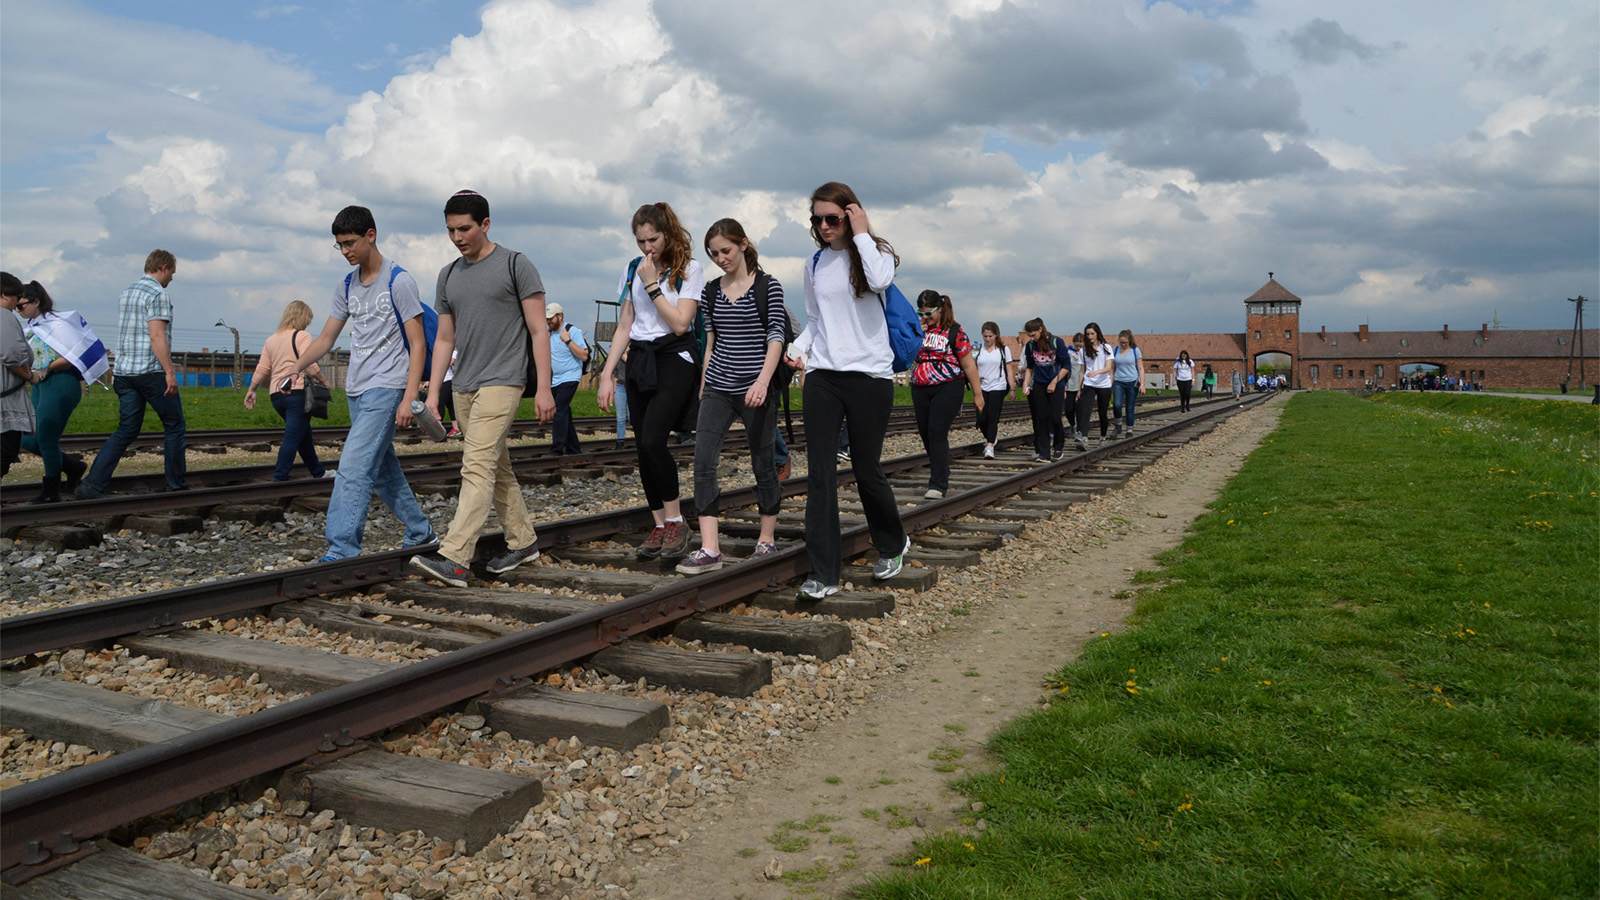 בני נוער במסע לפולין, במחנה ההשמדה אושוויץ-בירקנאו. למצולמים אין קשר לכתבה. (צילום: יוסי צליגר/ פלאש 90).